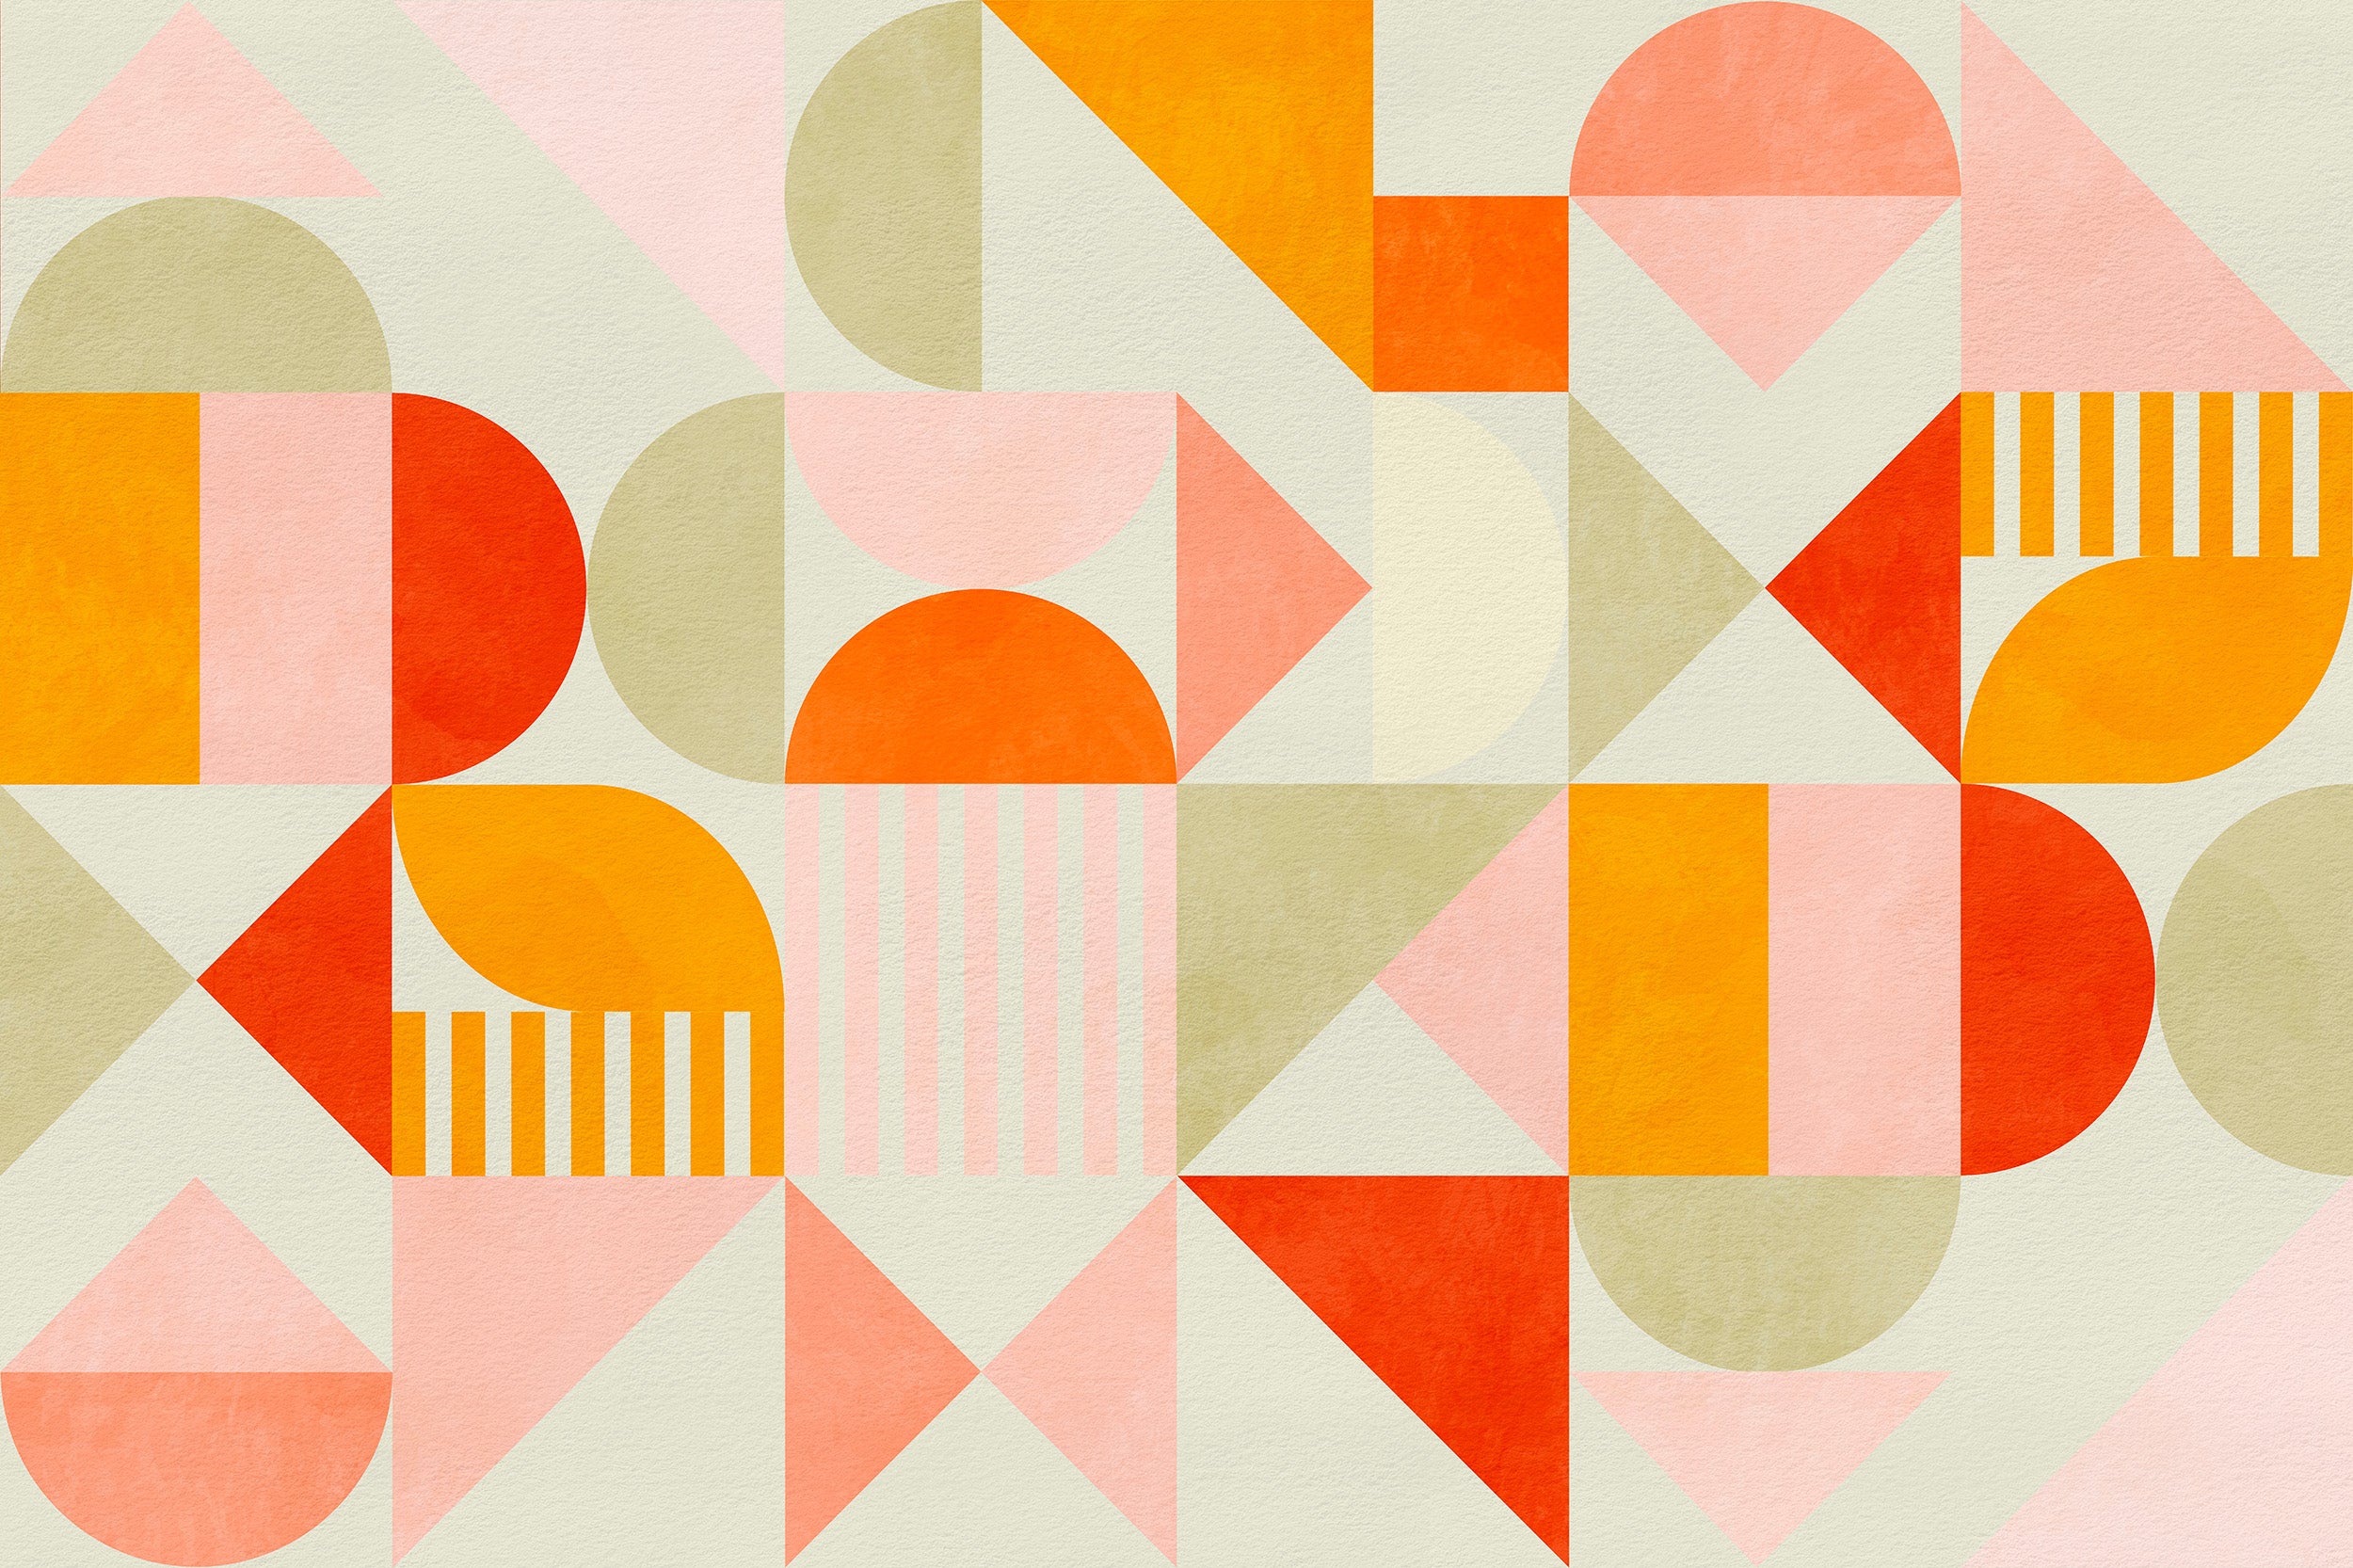 Watercolor geometric shape wallpaper in warm hues